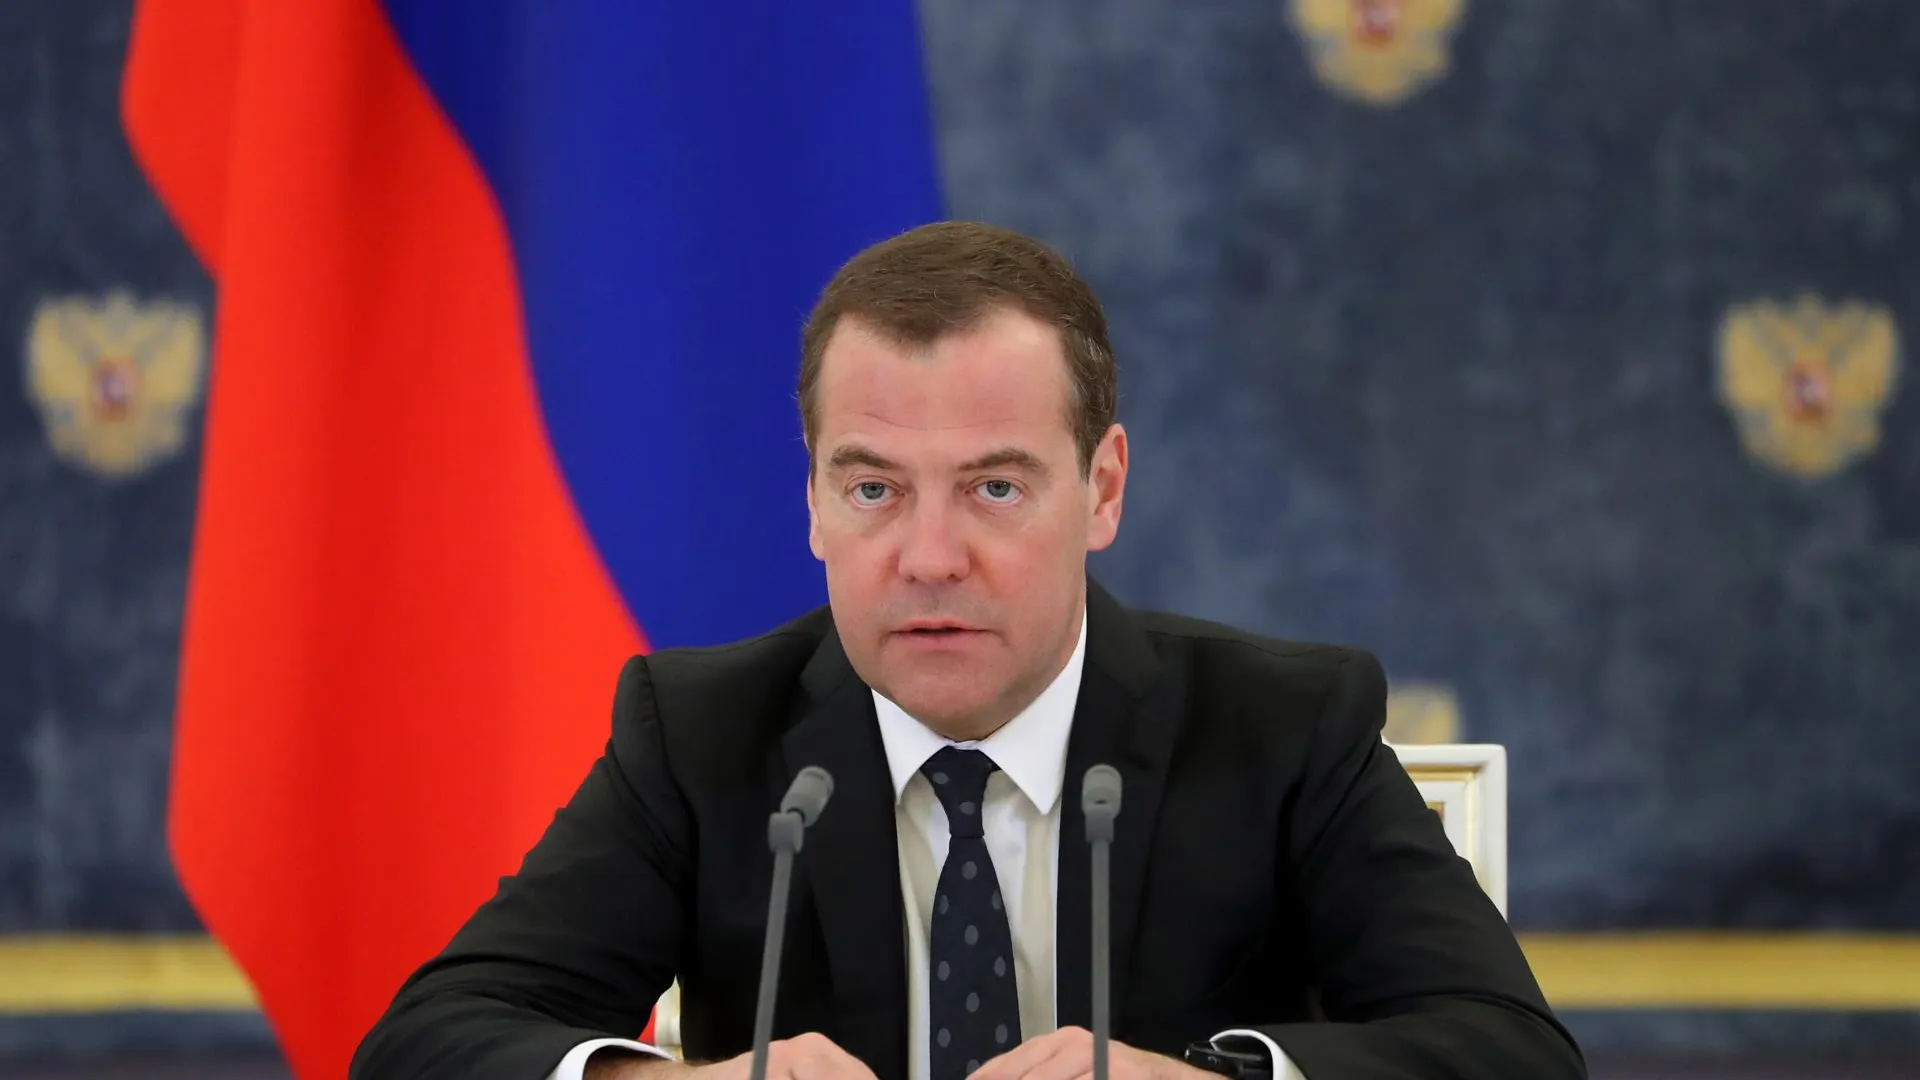 Медведев пообещал, что все пострадавшие в Crocus City Hall будут отомщены